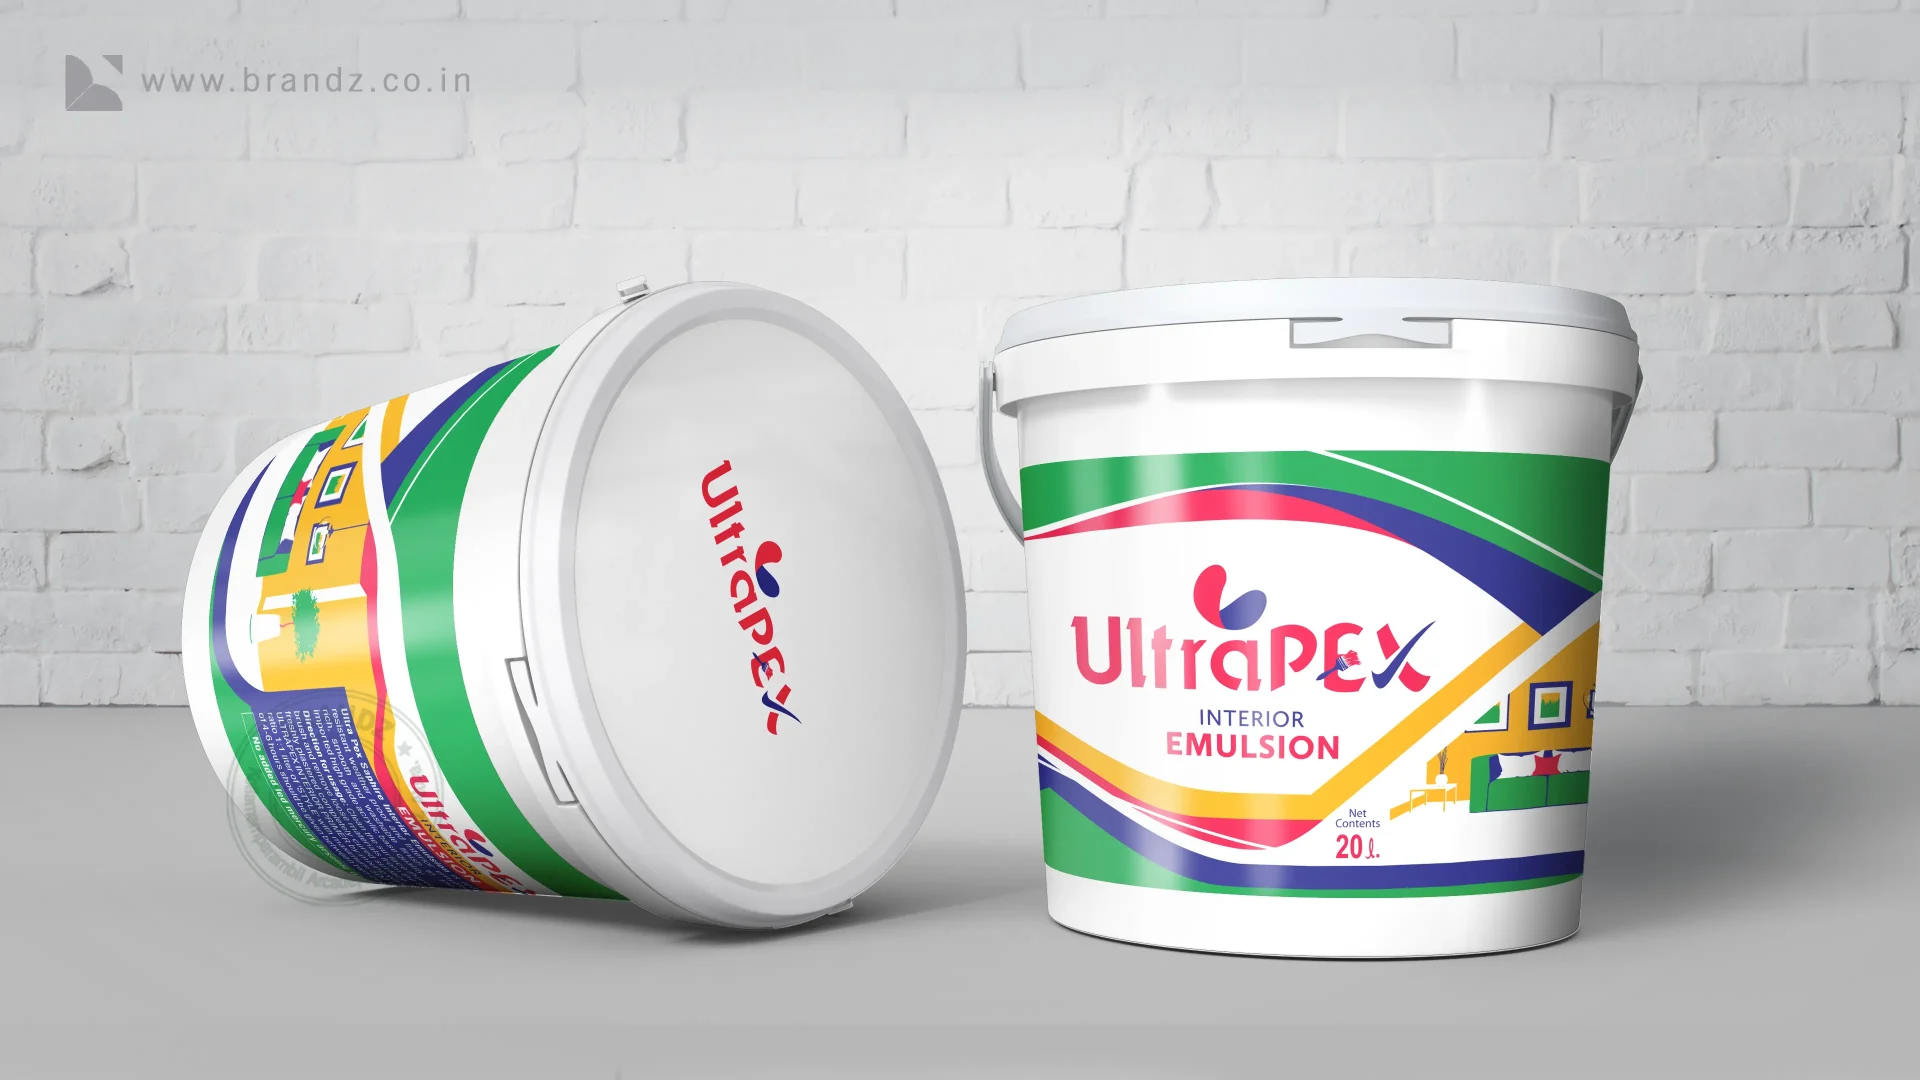 Ultrapex emulsion paint label